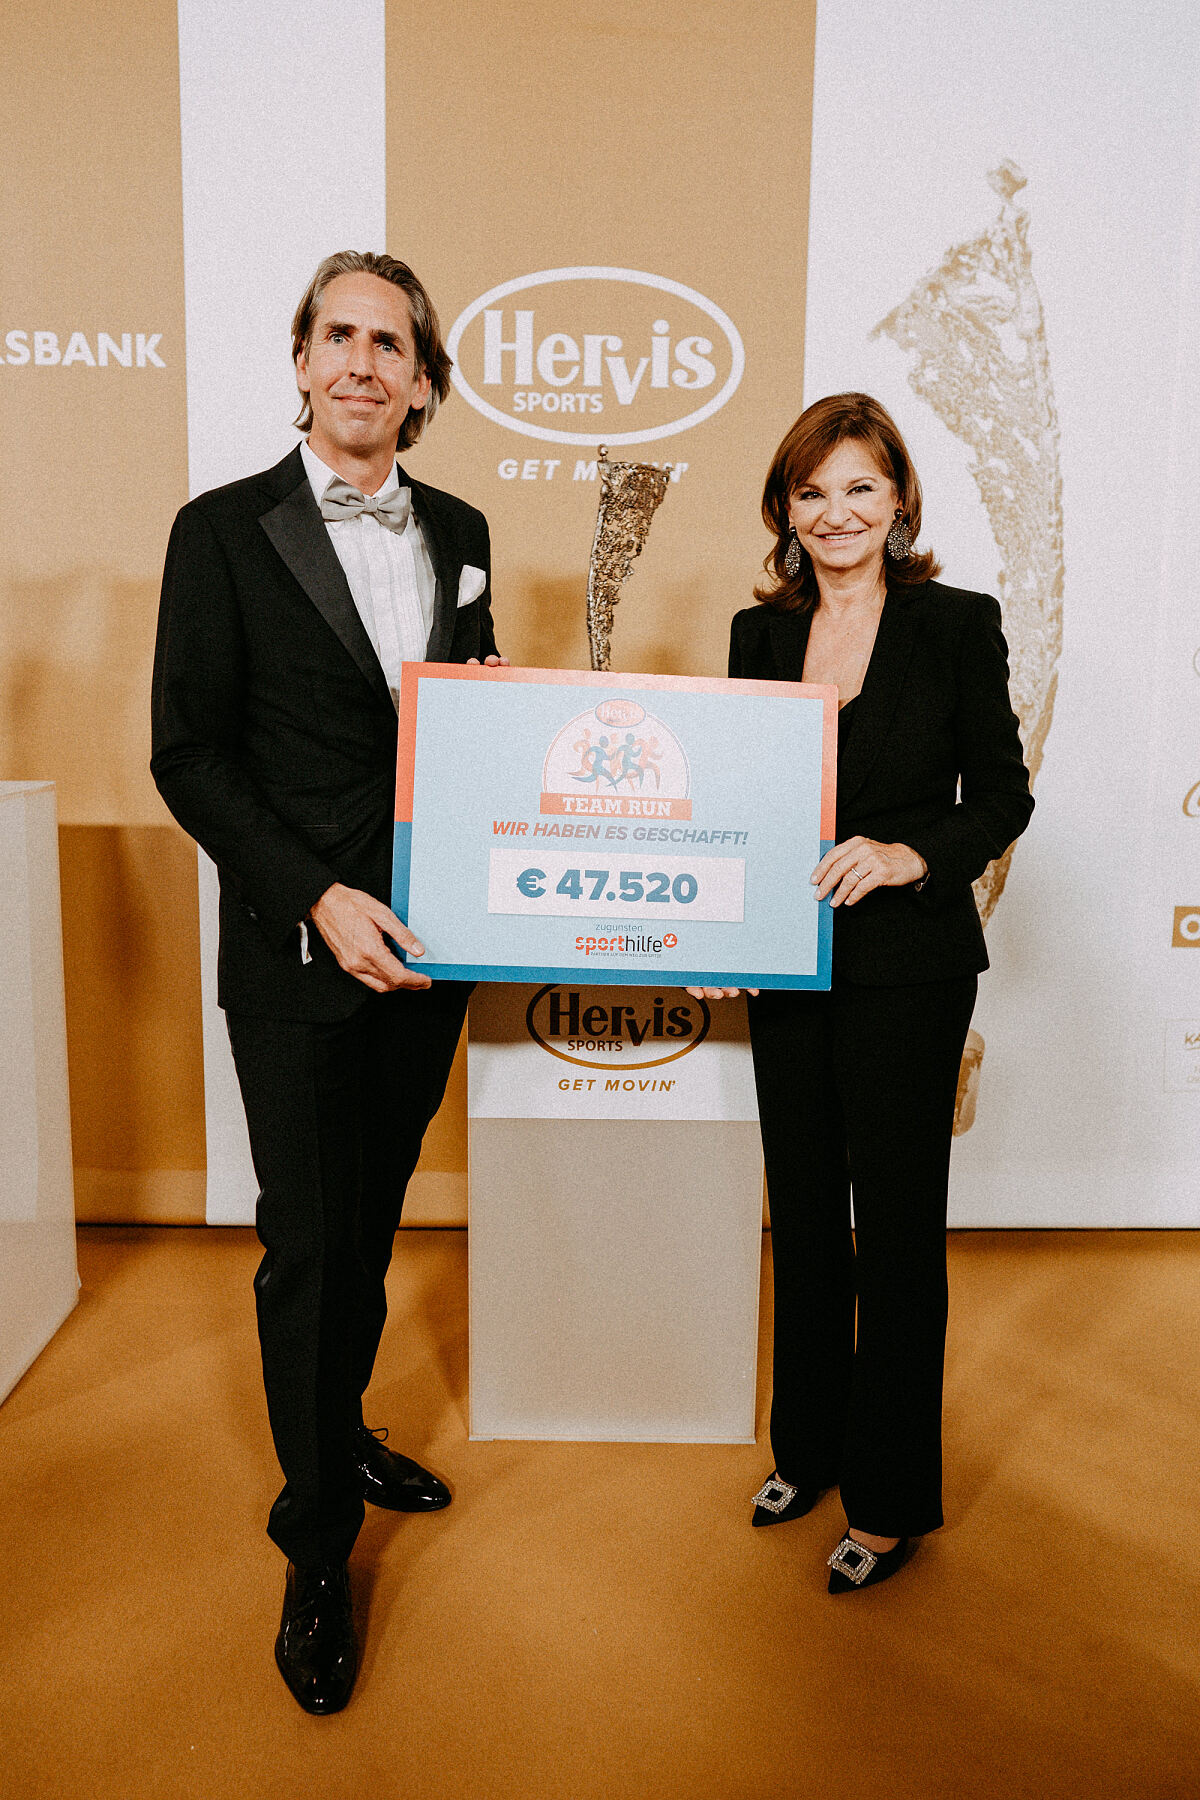 Hervis-Geschäftsführer Oliver Seda übergibt Scheck an Sporthilfe-Präsidentin Susanne Riess-Hahn (c) florianrogner photography